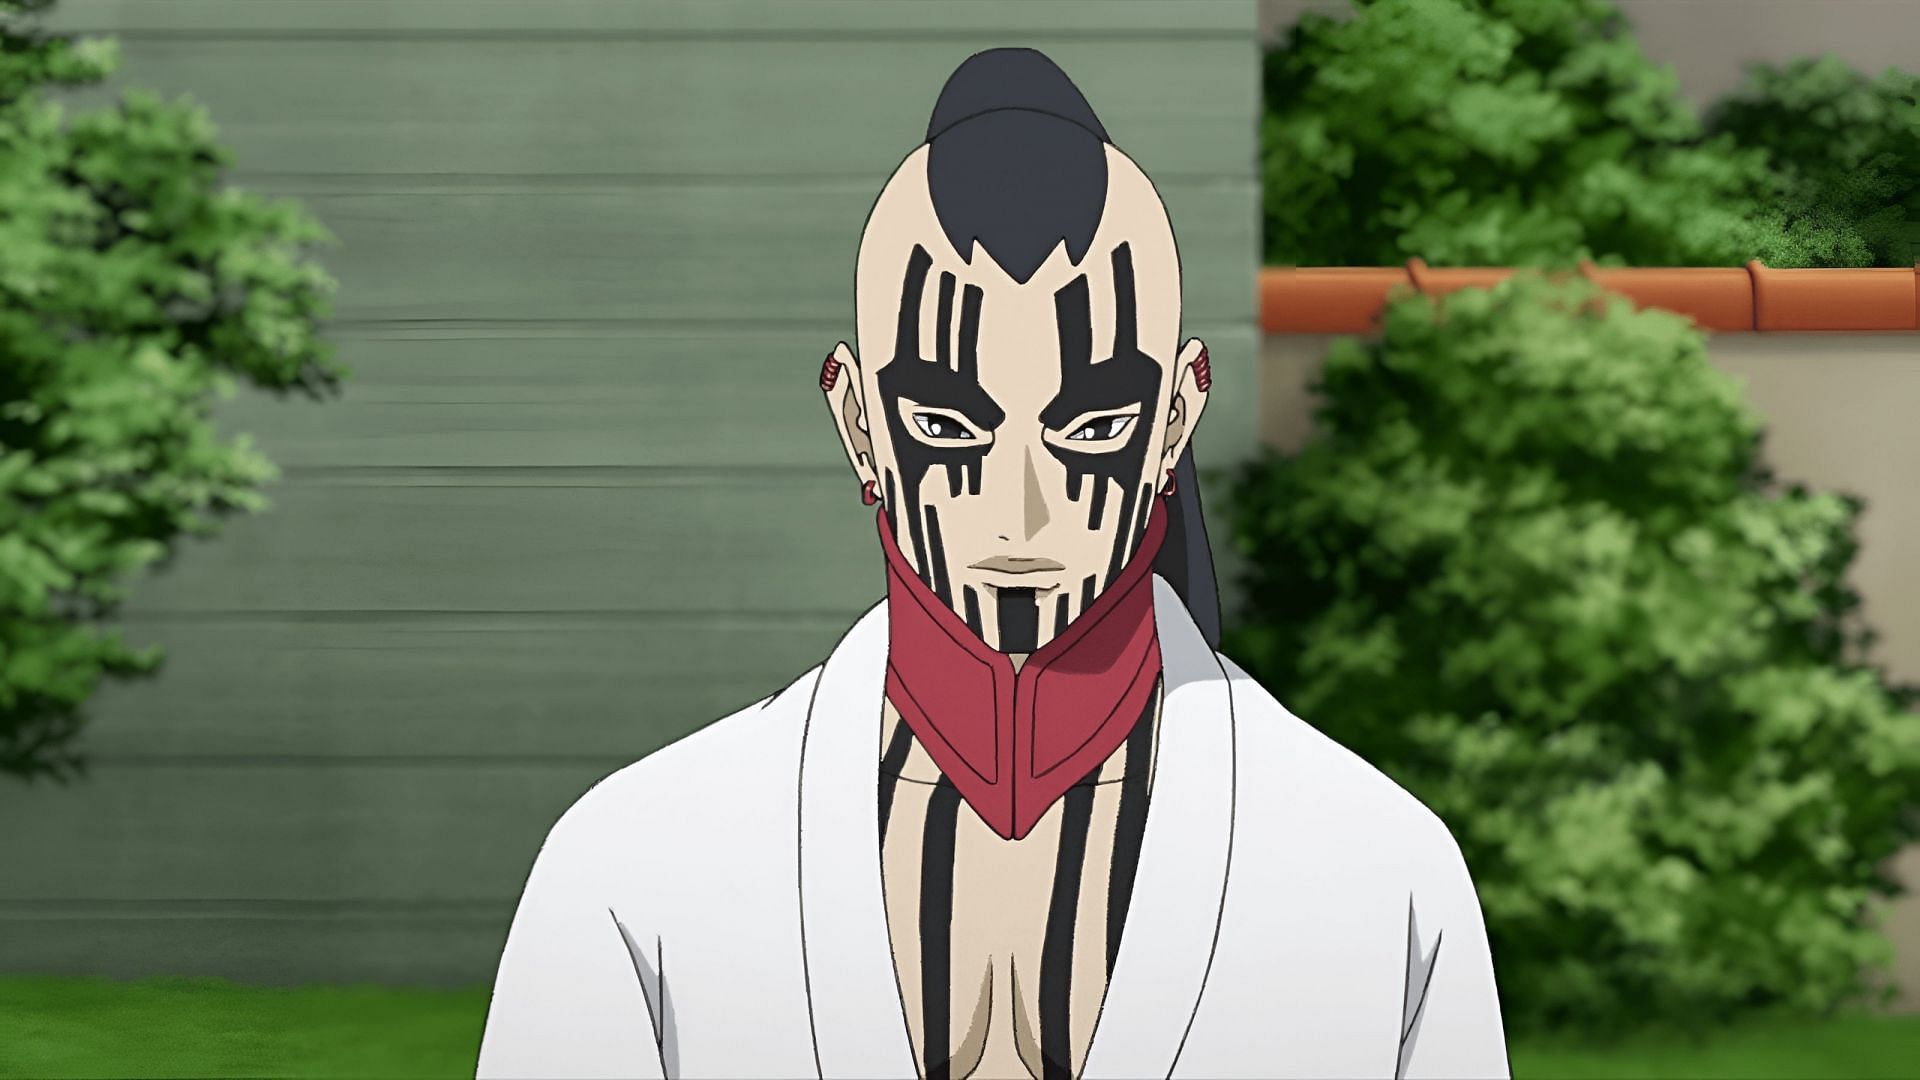 Jigen (Isshiki) as seen in the anime (Image via Studio Pierrot)